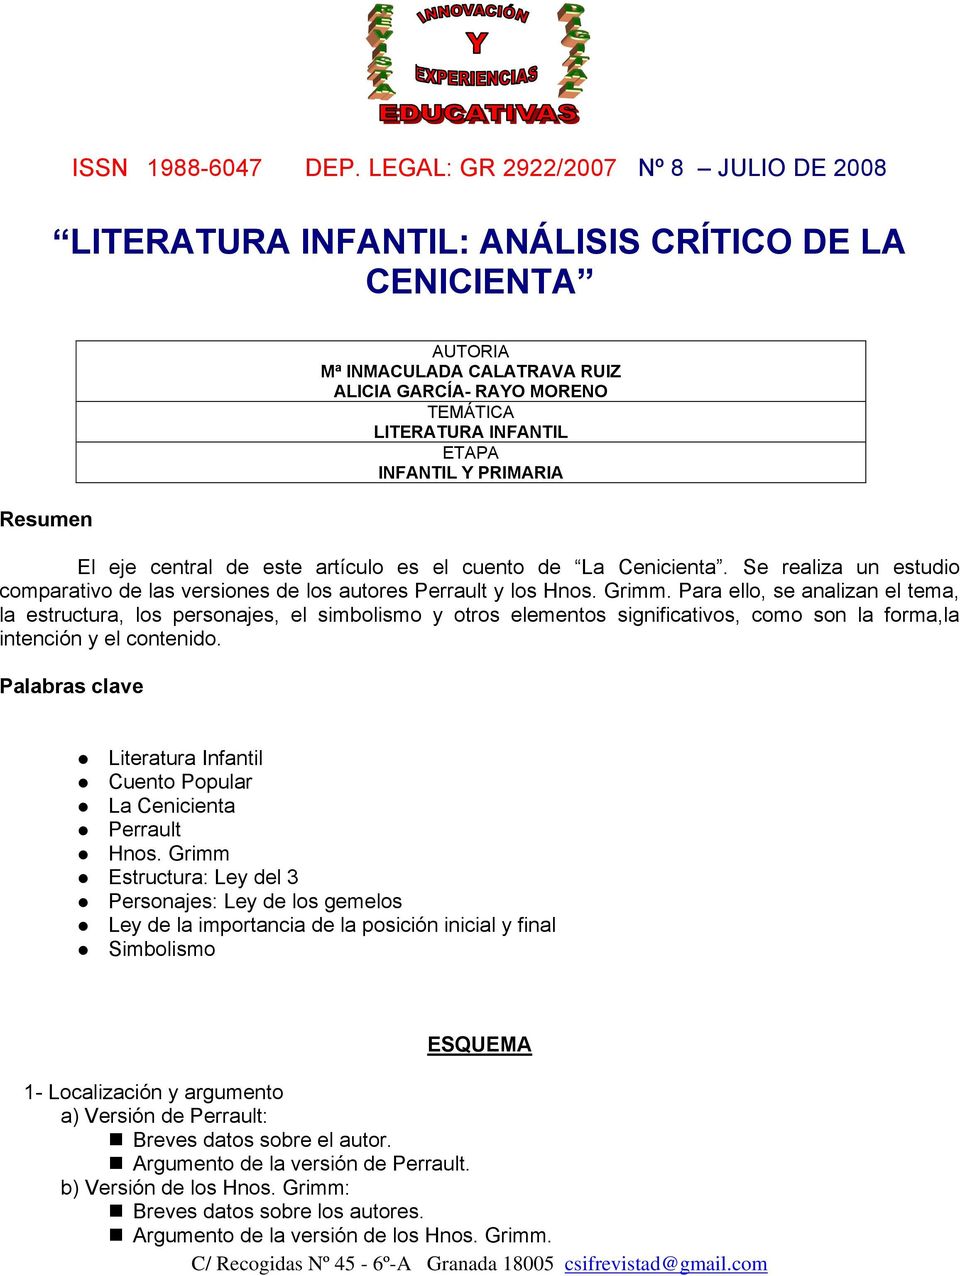 LITERATURA INFANTIL: ANÁLISIS CRÍTICO DE LA CENICIENTA - PDF Descargar libre